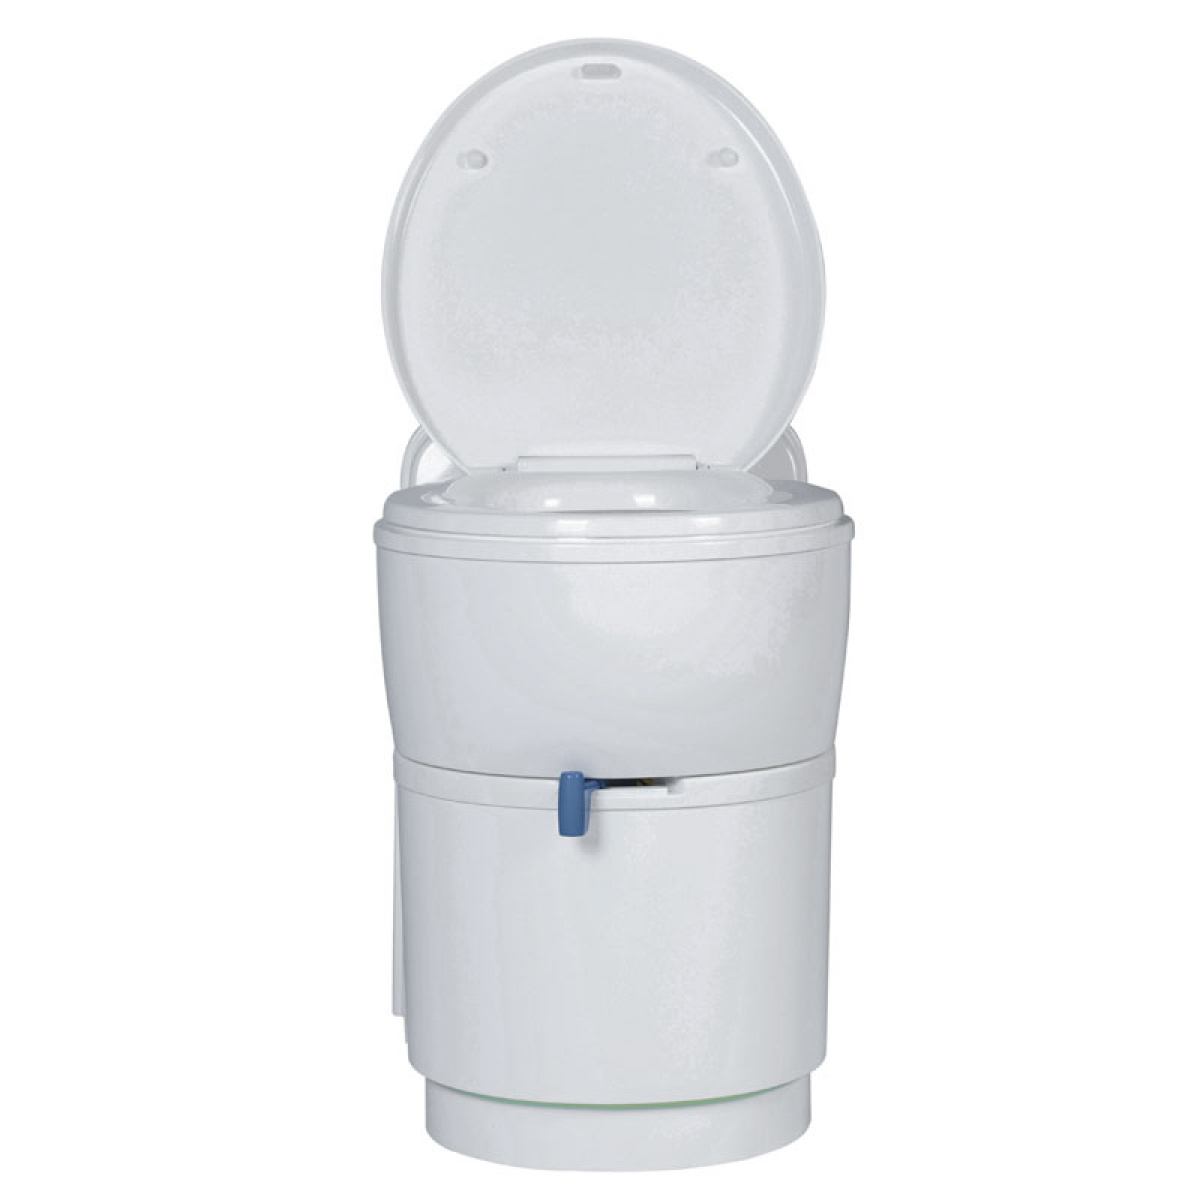 Kassettetoilet komplet med dør & tank i gruppen Vand & Sanitet / Toilet / Toiletter / Kassettetoiletter hos Campmarket (79452)